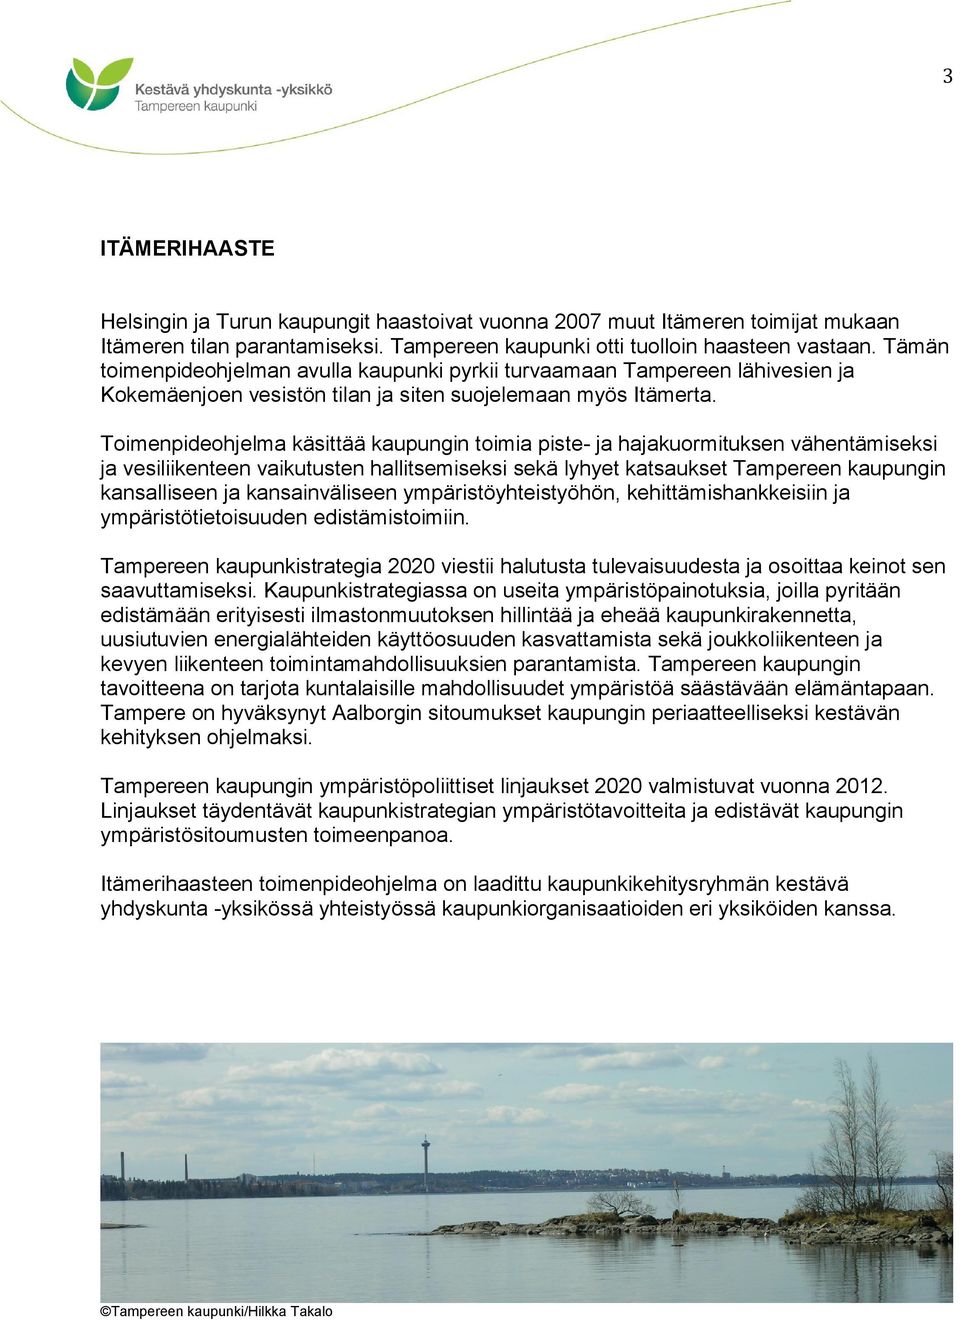 Toimenpideohjelma käsittää kaupungin toimia piste ja hajakuormituksen vähentämiseksi ja vesiliikenteen vaikutusten hallitsemiseksi sekä lyhyet katsaukset Tampereen kaupungin kansalliseen ja